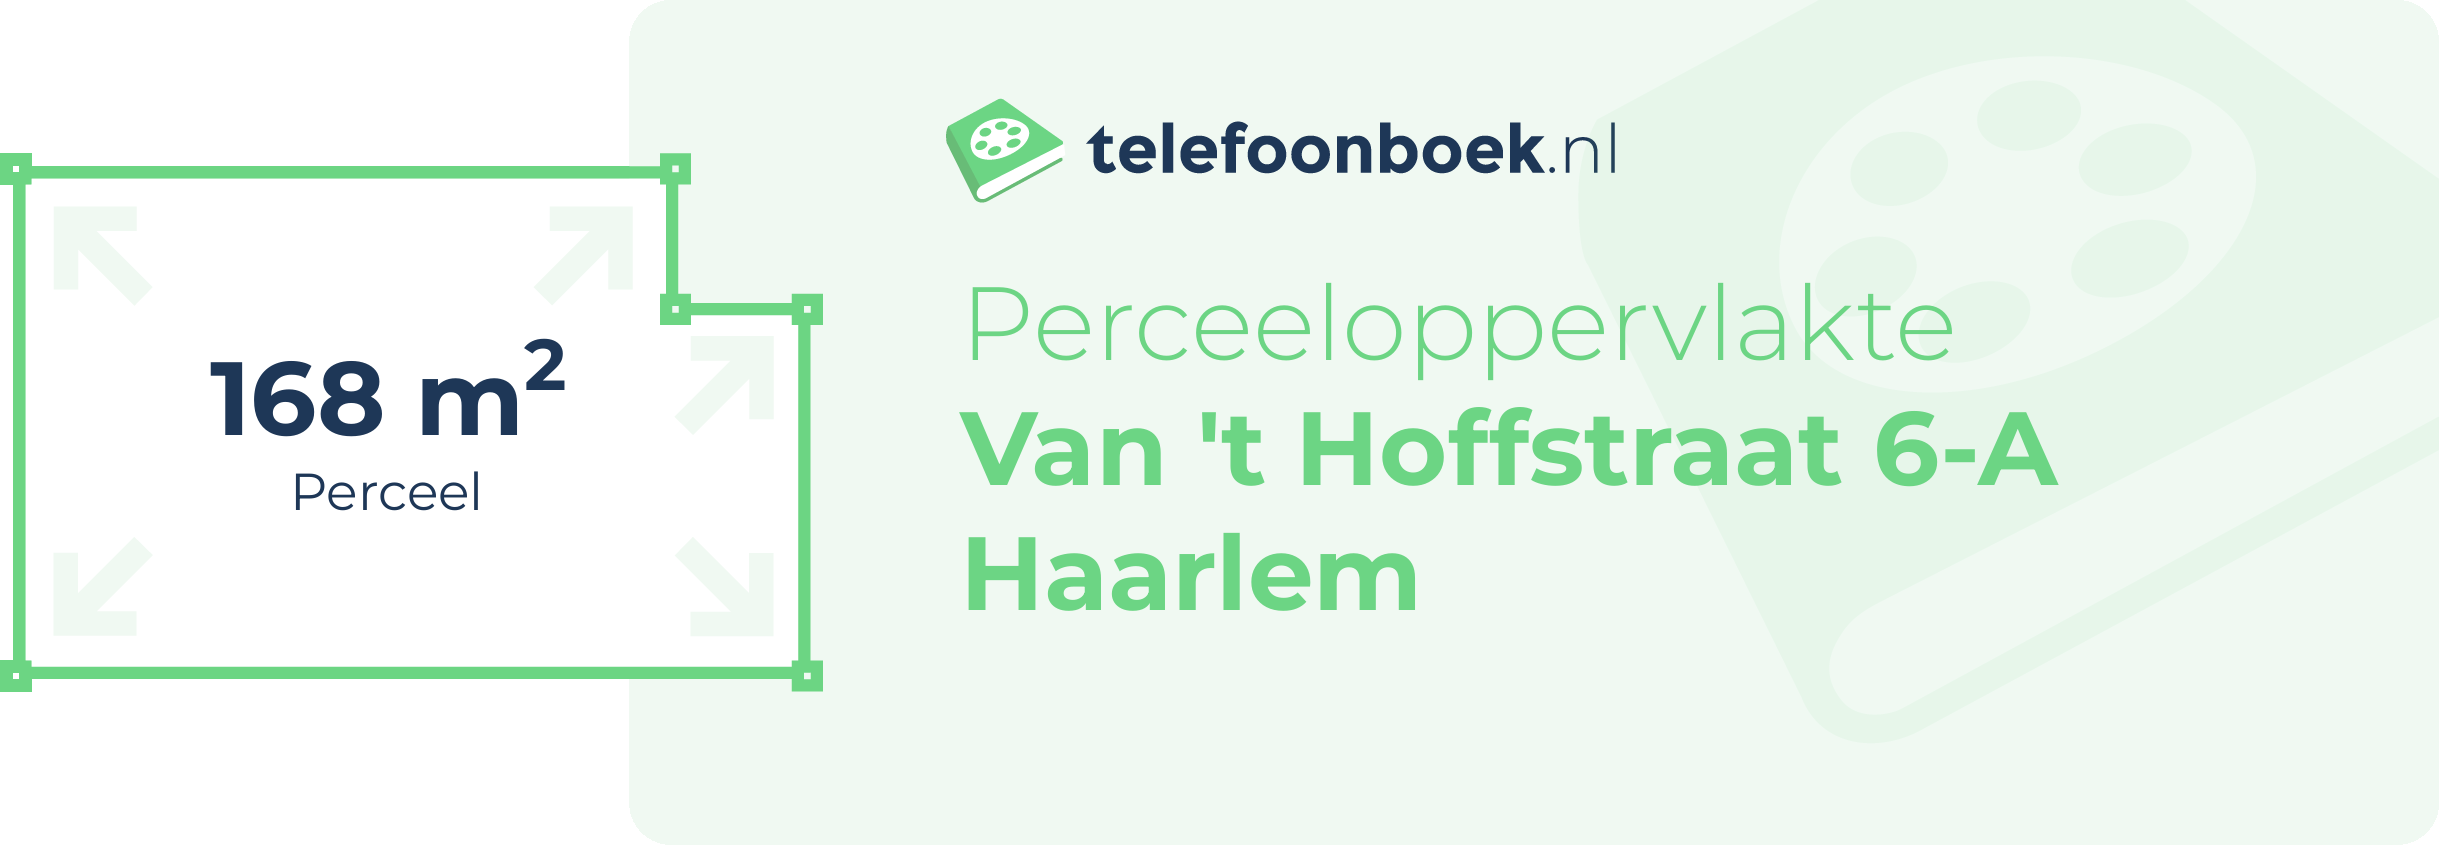 Perceeloppervlakte Van 't Hoffstraat 6-A Haarlem